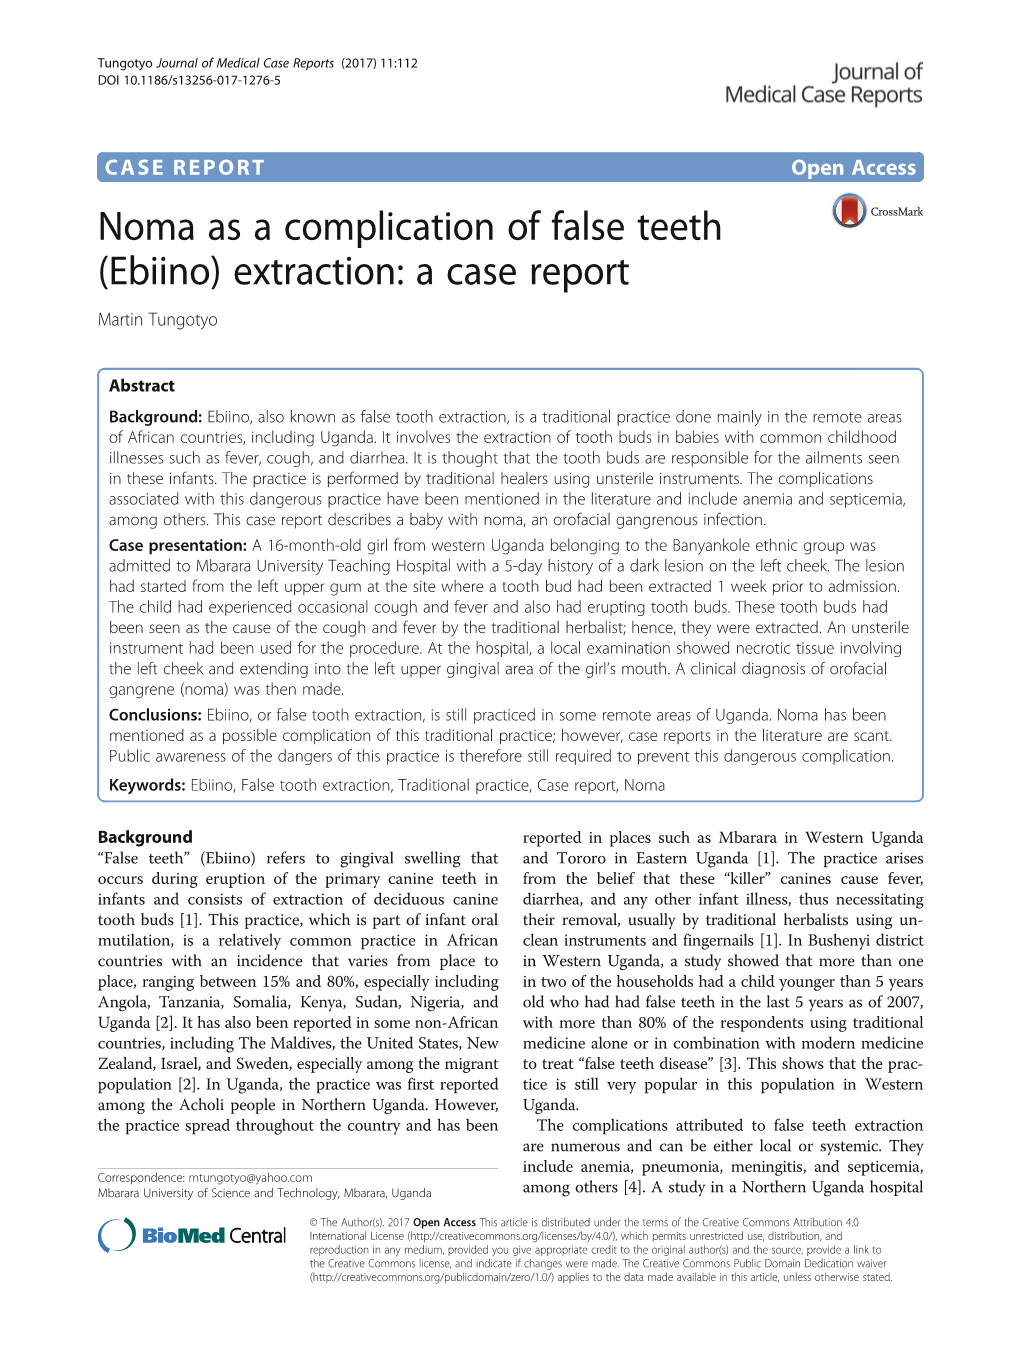 Noma As a Complication of False Teeth (Ebiino) Extraction: a Case Report Martin Tungotyo